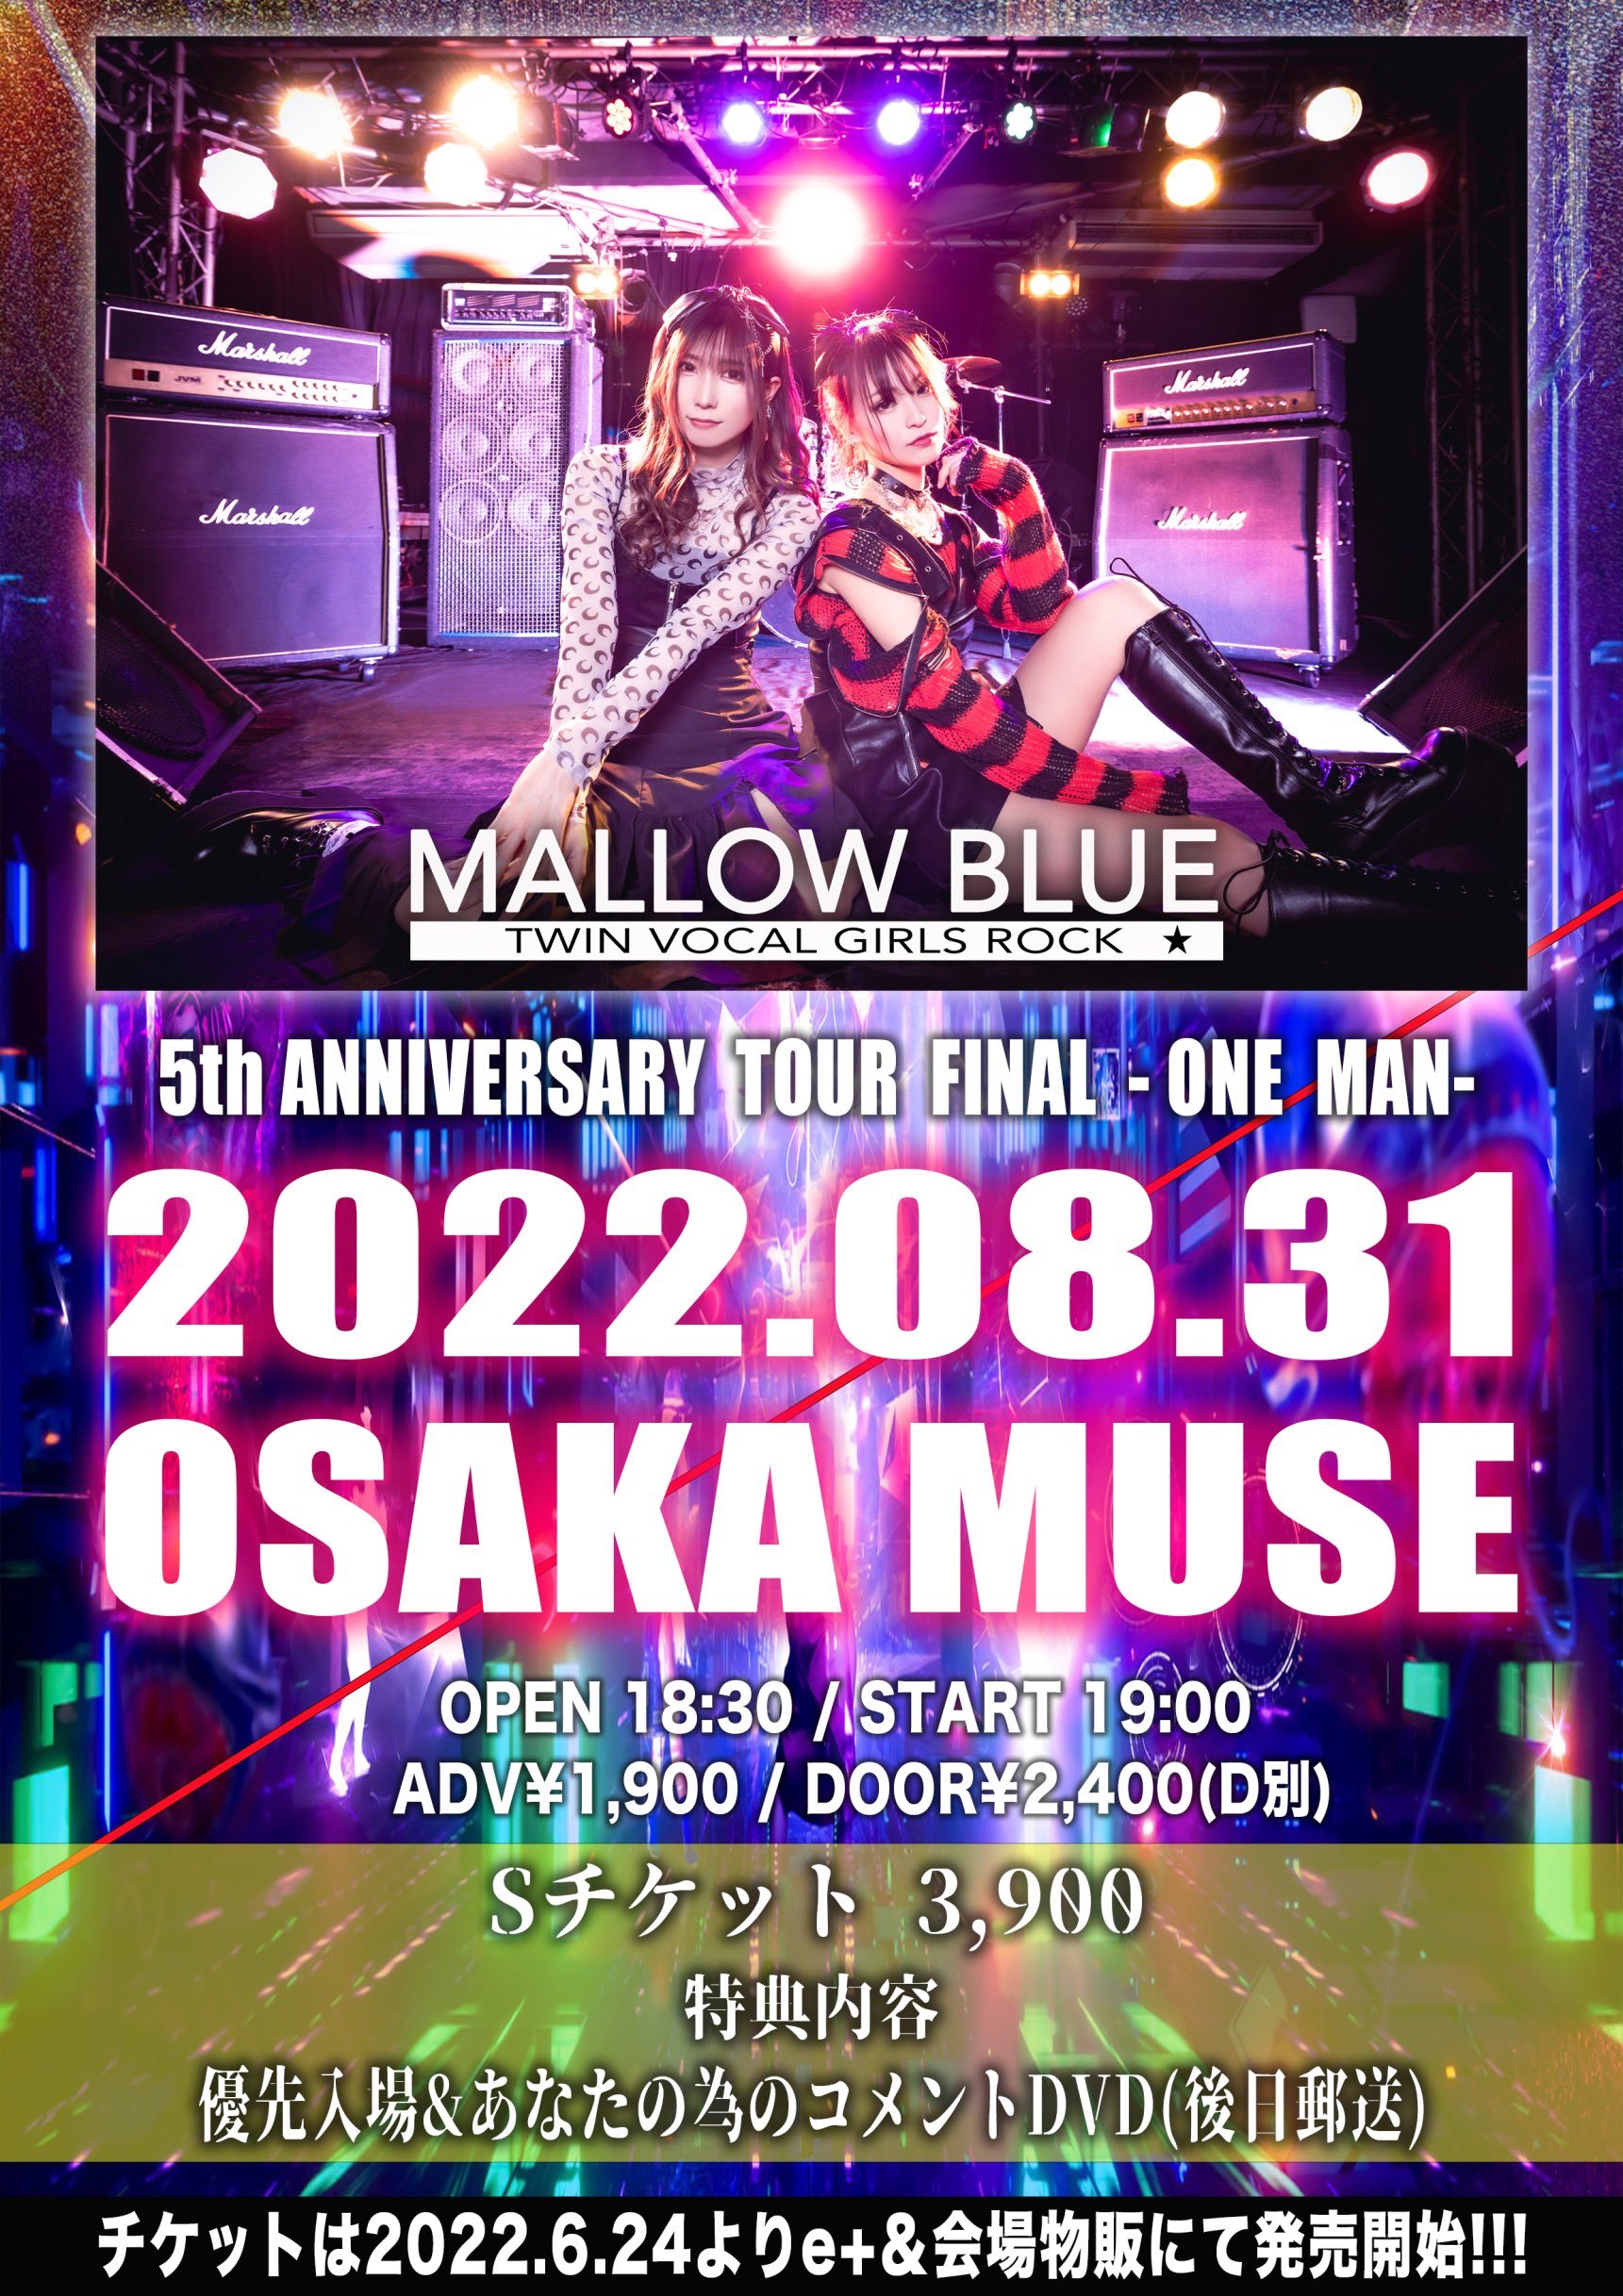 星井あおサポート出演公演『MALLOW BLUE 5th Anniversary 東名阪TOUR FINAL-ONE MAN-』